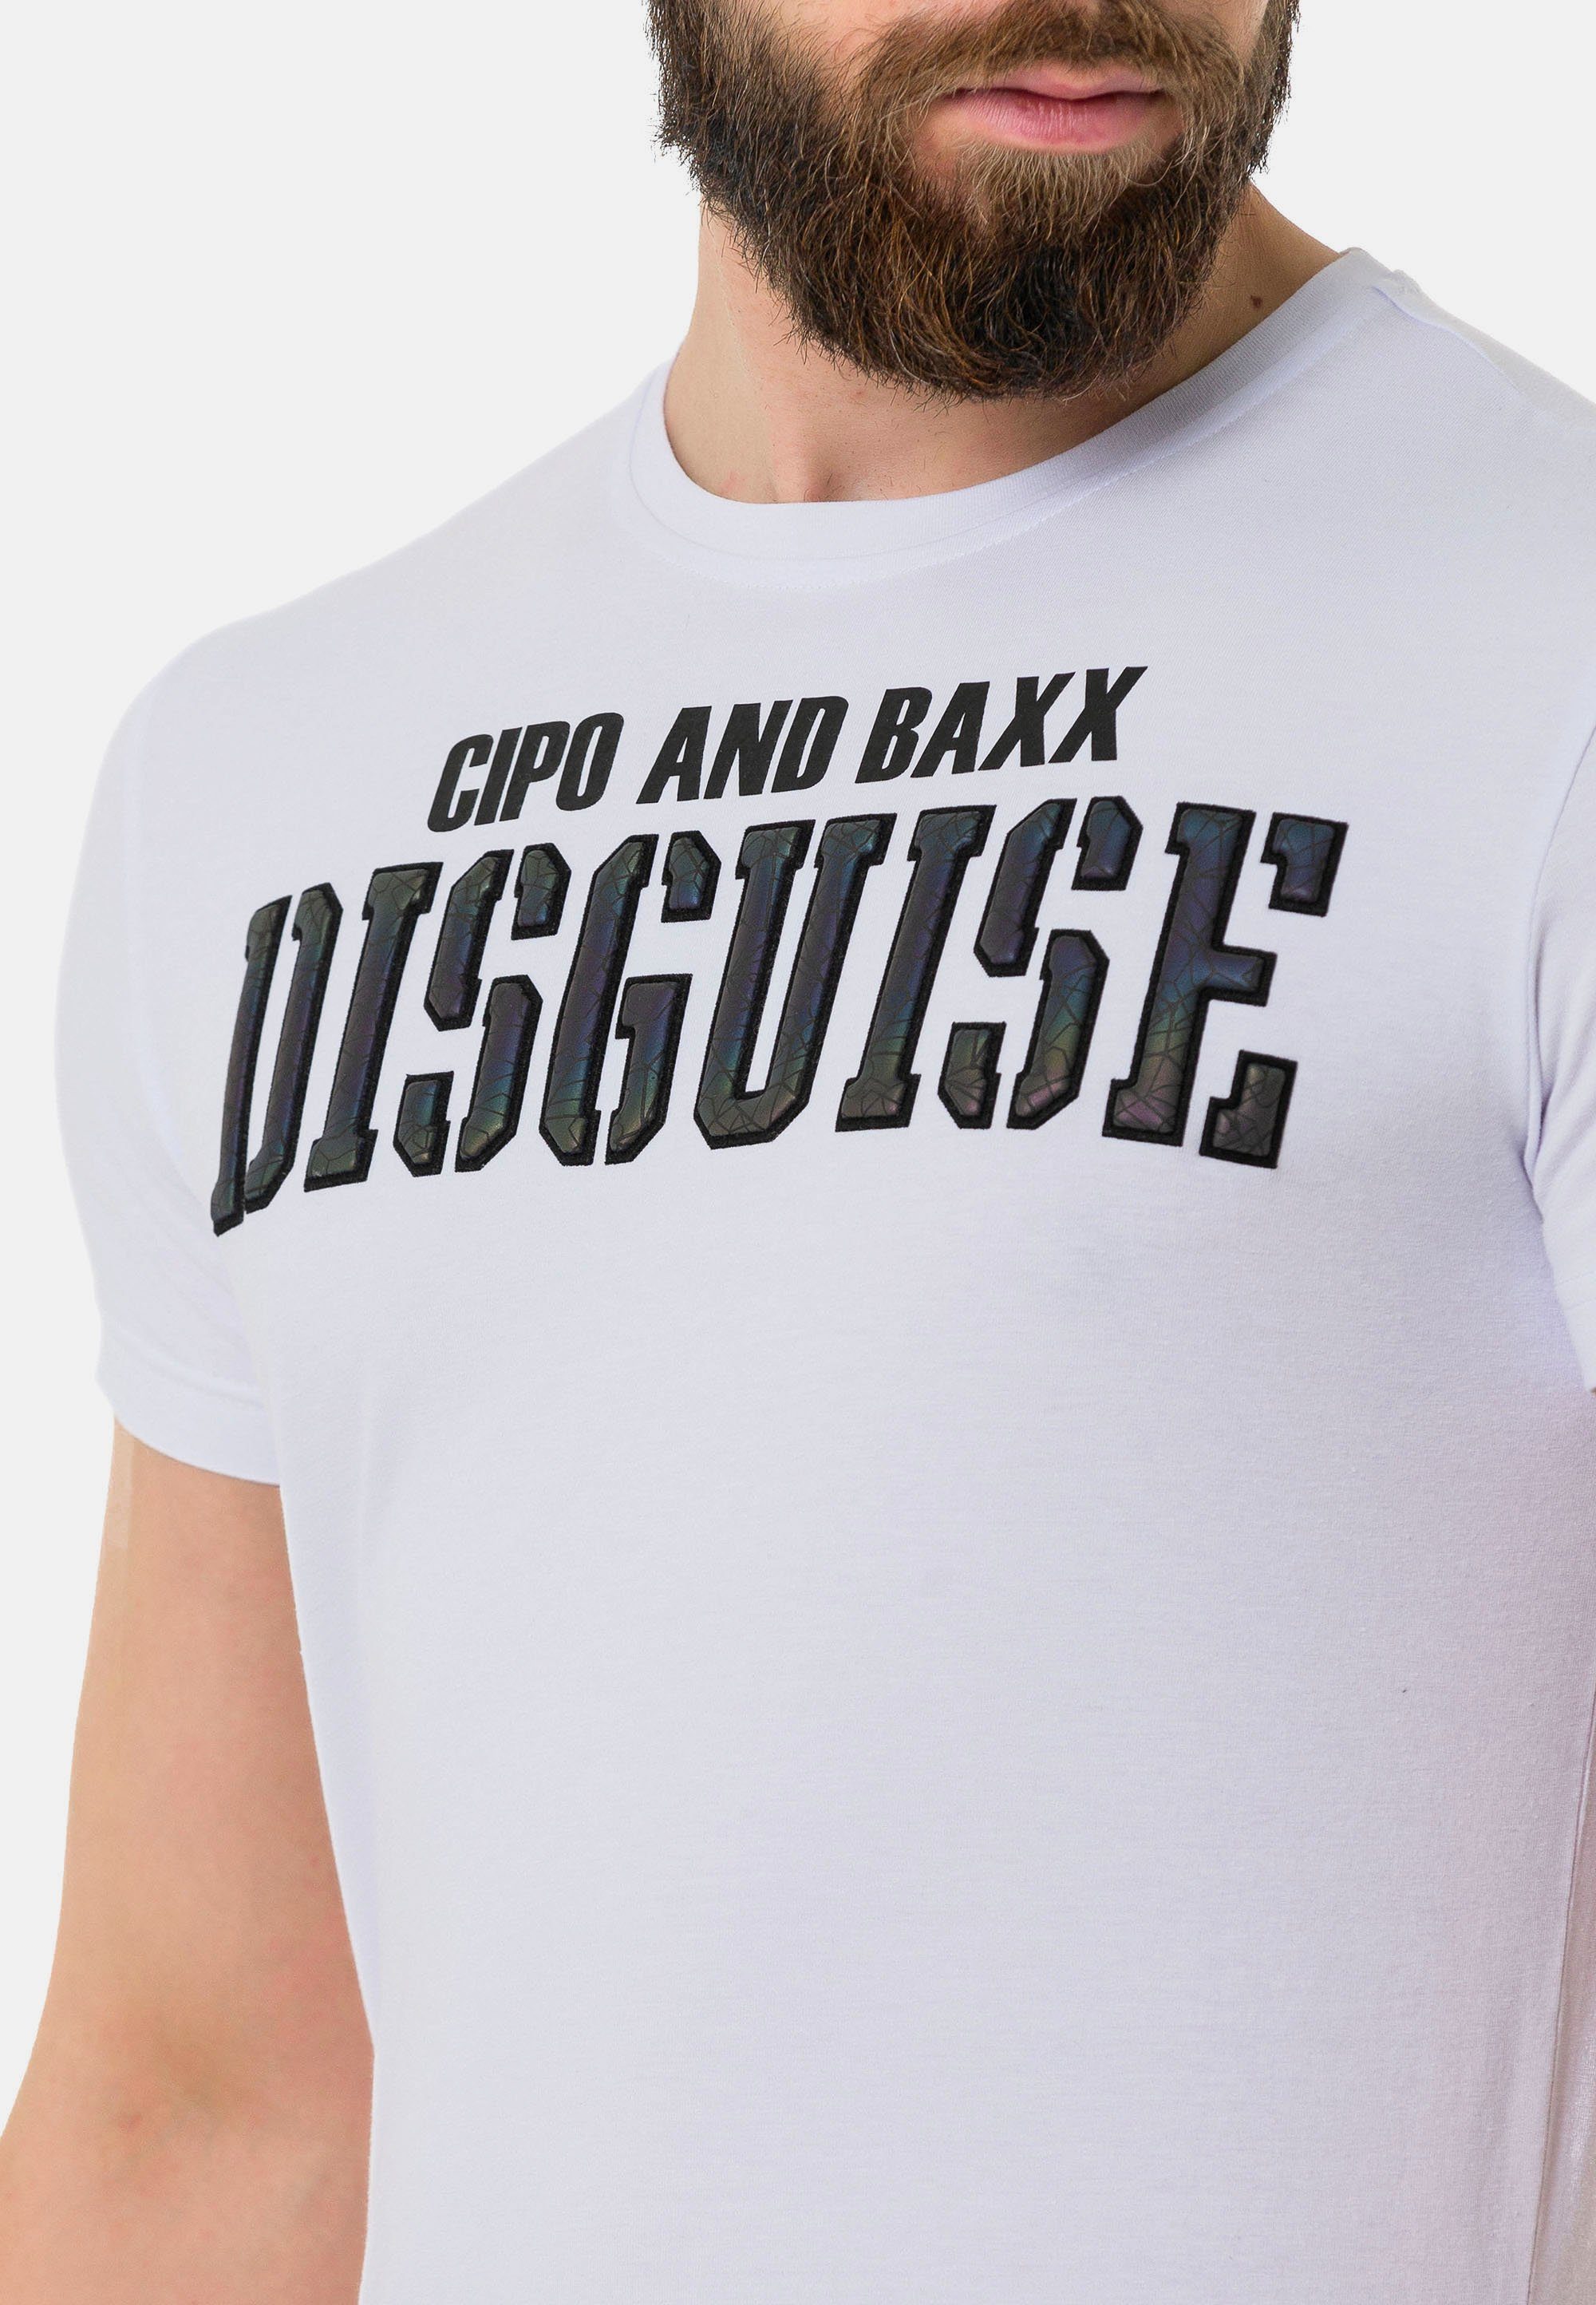 coolem Cipo Baxx & mit T-Shirt Print weiß